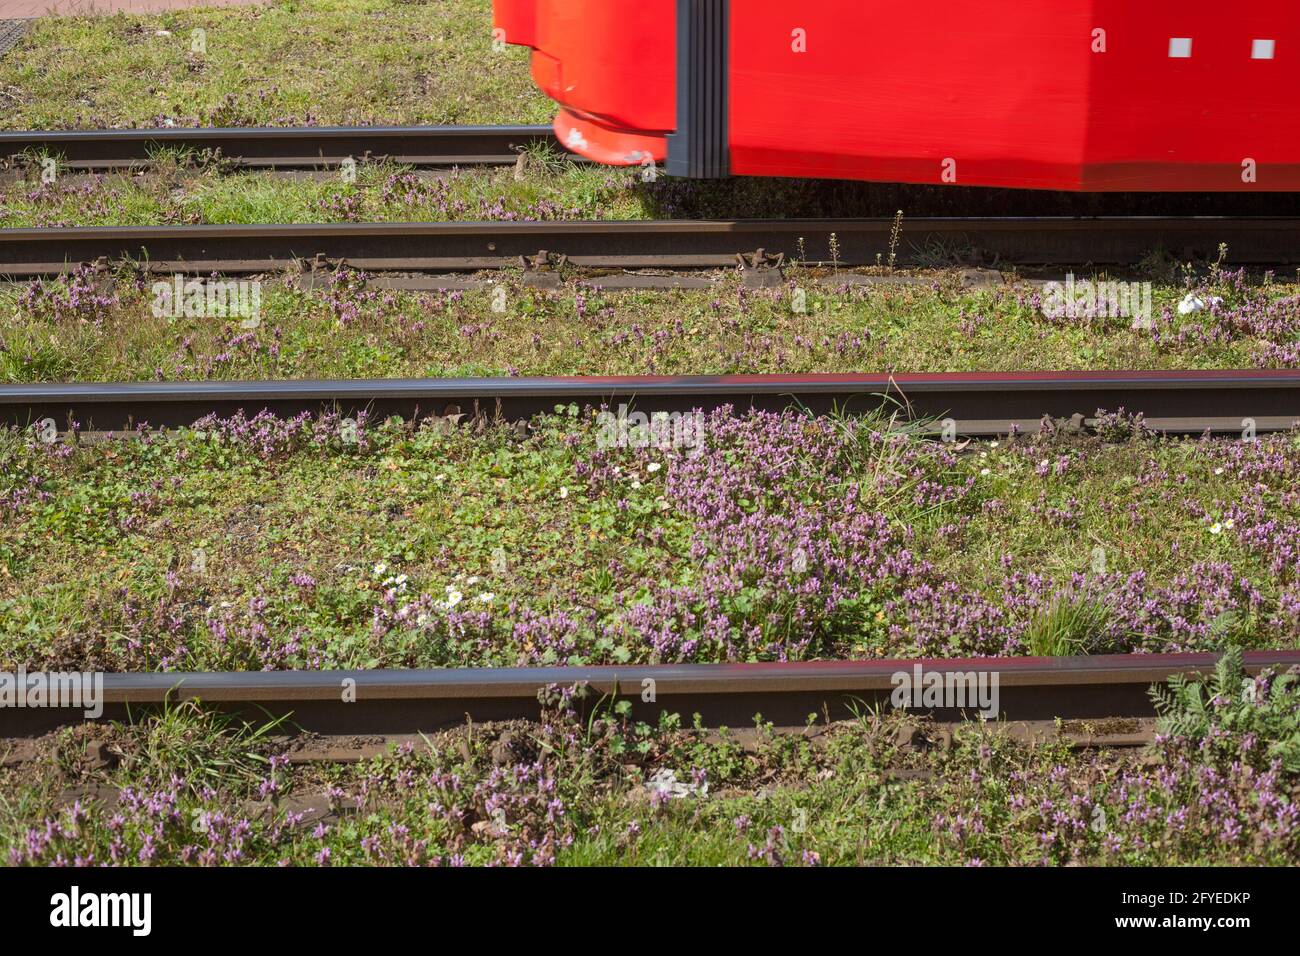 Straßenbahn, Straßenbahnschienen, Rasenfläche, Deutschland, Europa Stock Photo